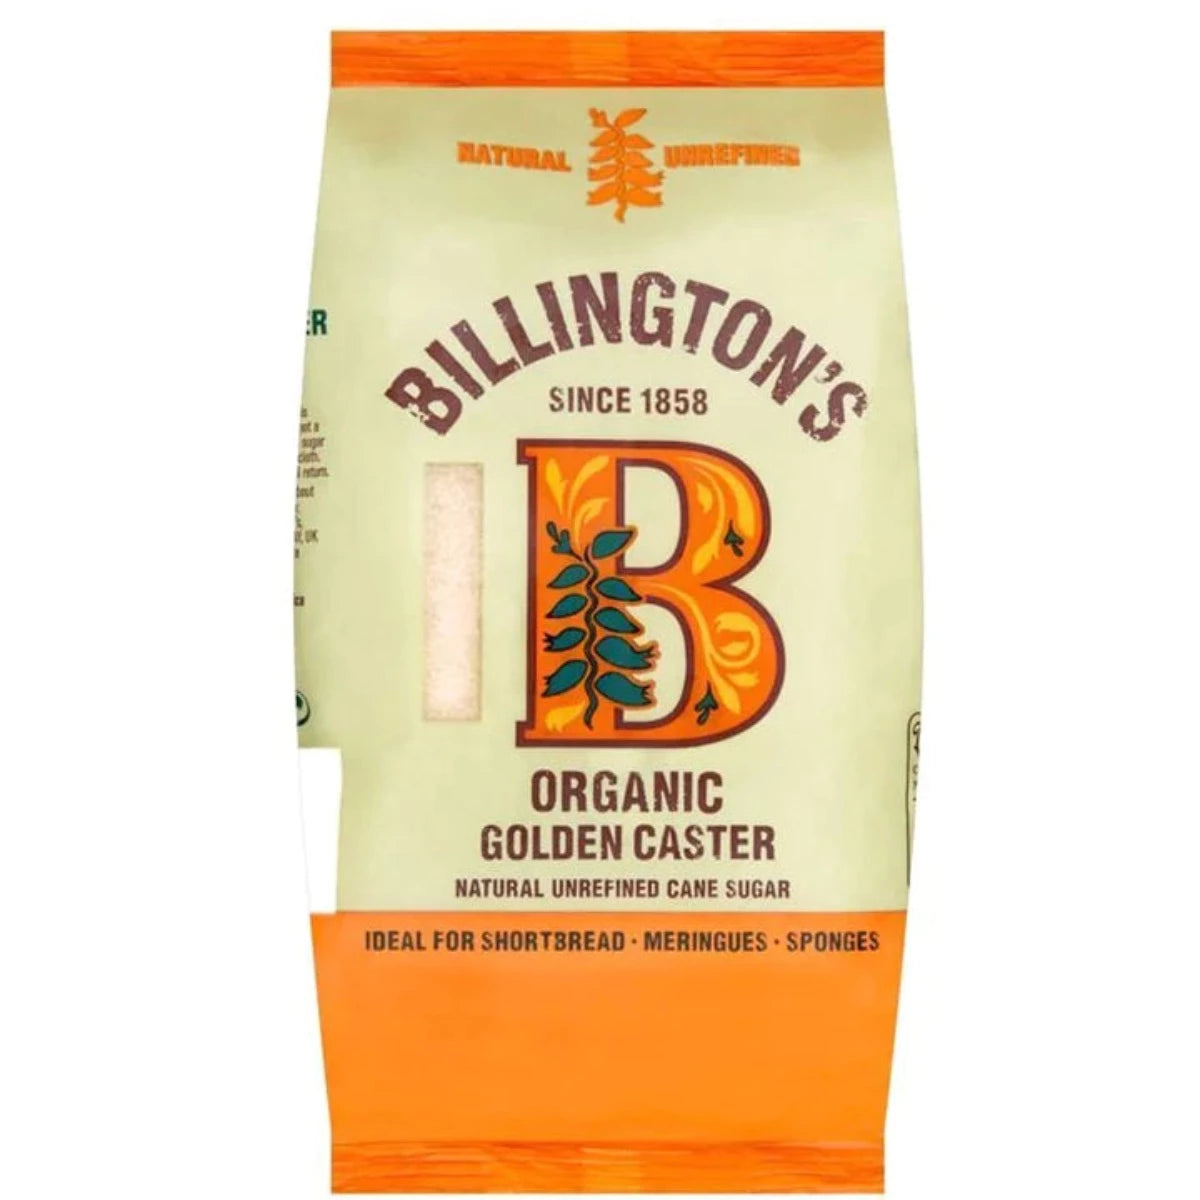 Billington's Organic Golden Caster Sugar 500g